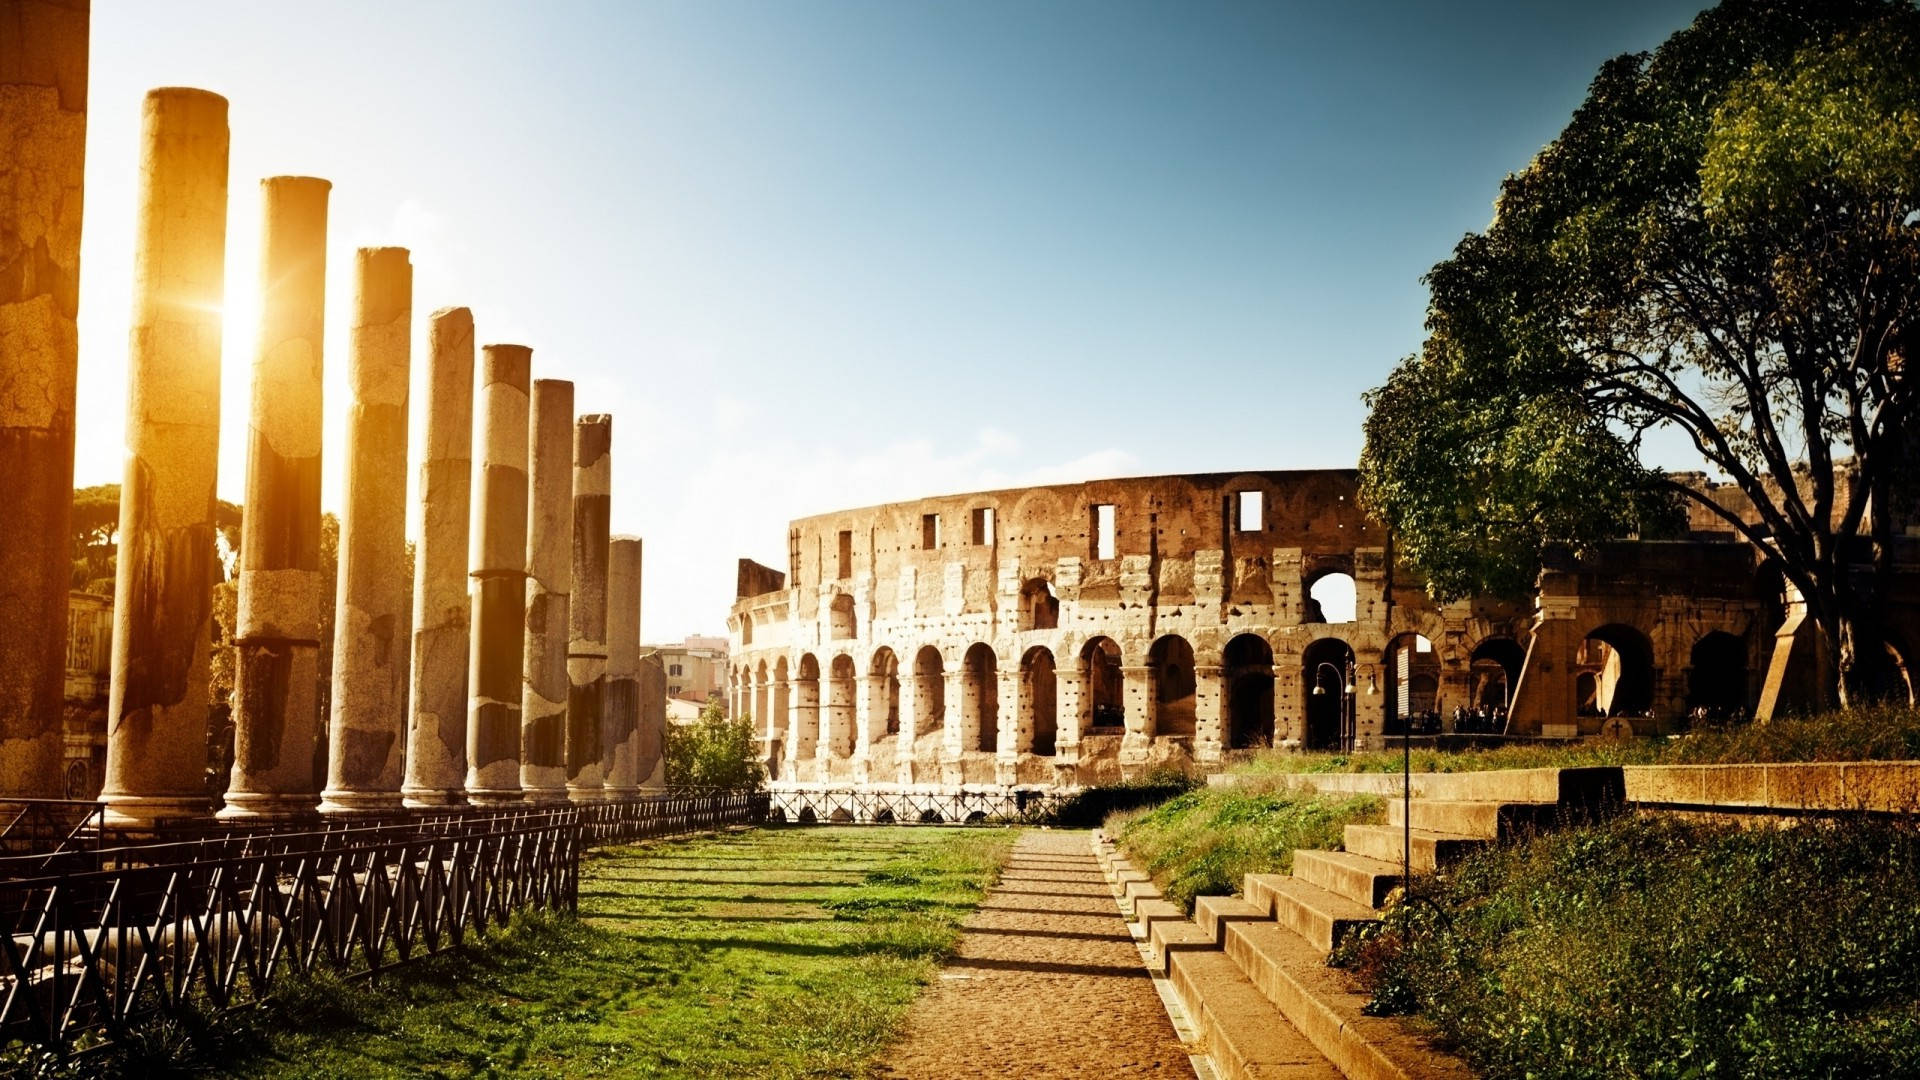 Colosseum And Pillars Desktop Wallpaper